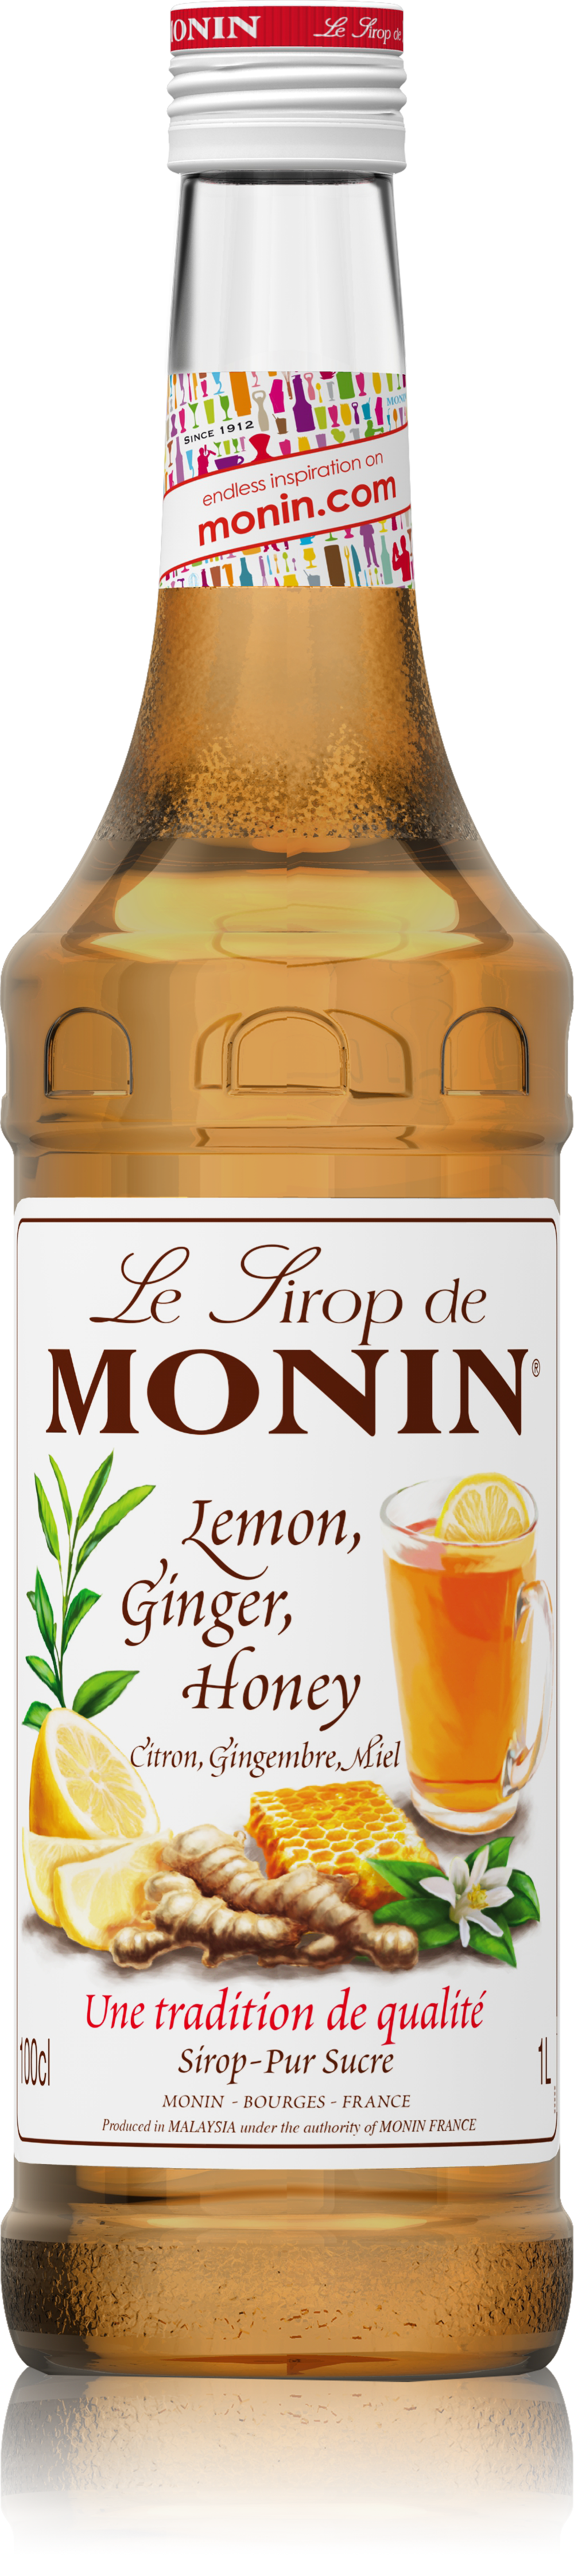 Le Sirop de MONIN Lemon, Ginger, Honey